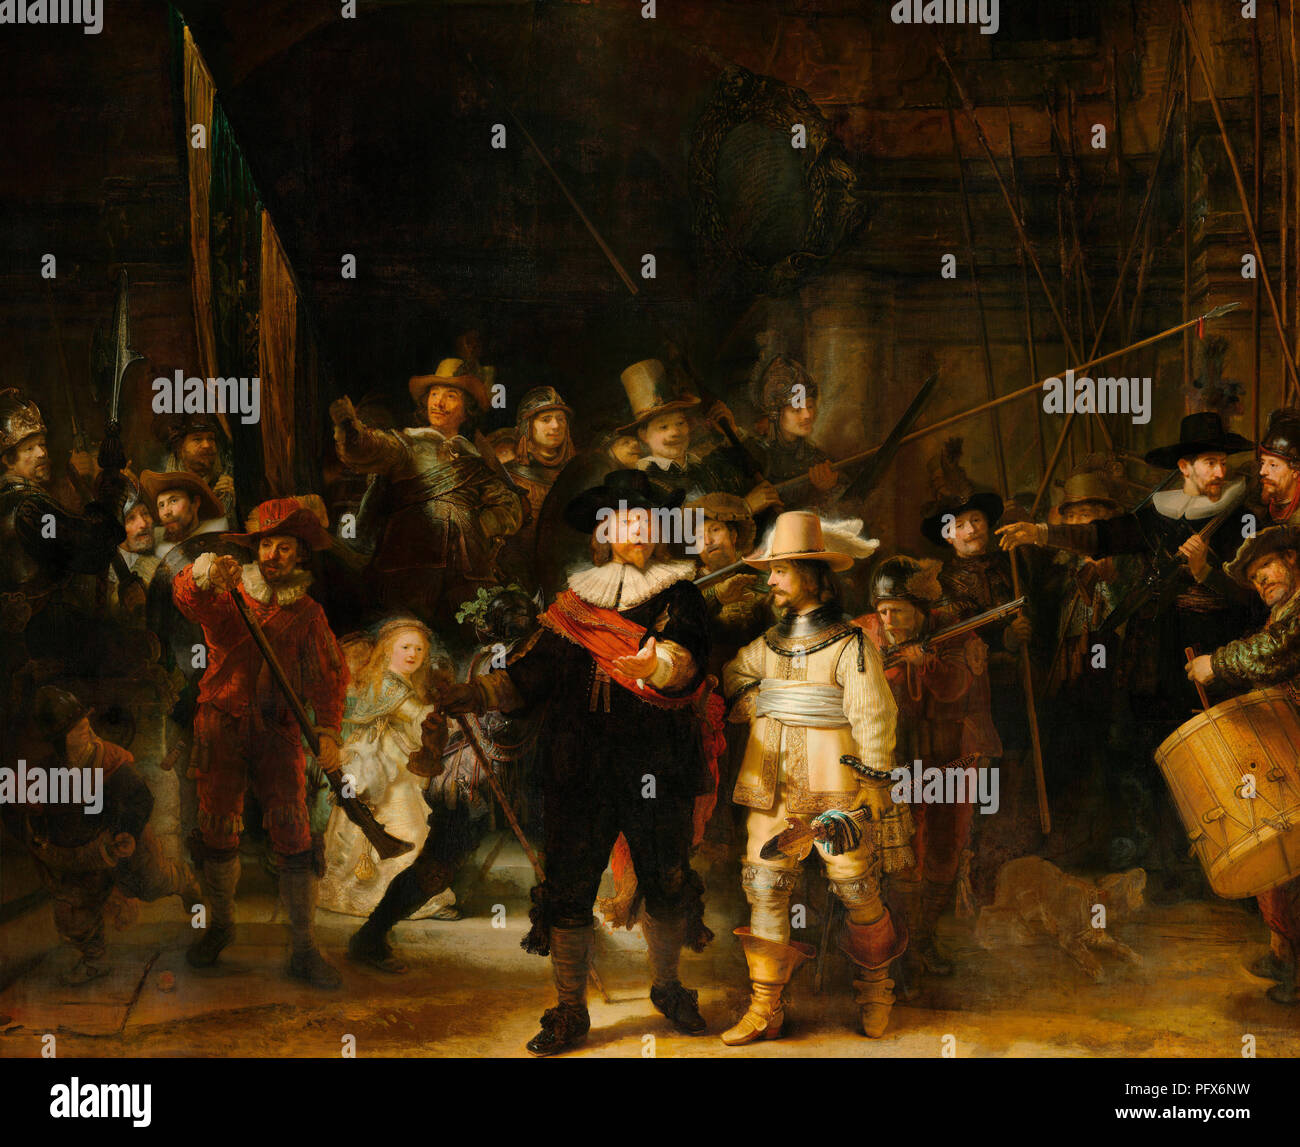 Rembrandt Harmenszoon van Rijn, 1606-1669, deutscher Künstler. Miliz Unternehmen von Bezirk II unter dem Kommando von Kapitän Frans Banninck Cocq. Als Wächter der Nacht bekannt. Rijksmuseum, Amsterdam, Niederlande. Stockfoto